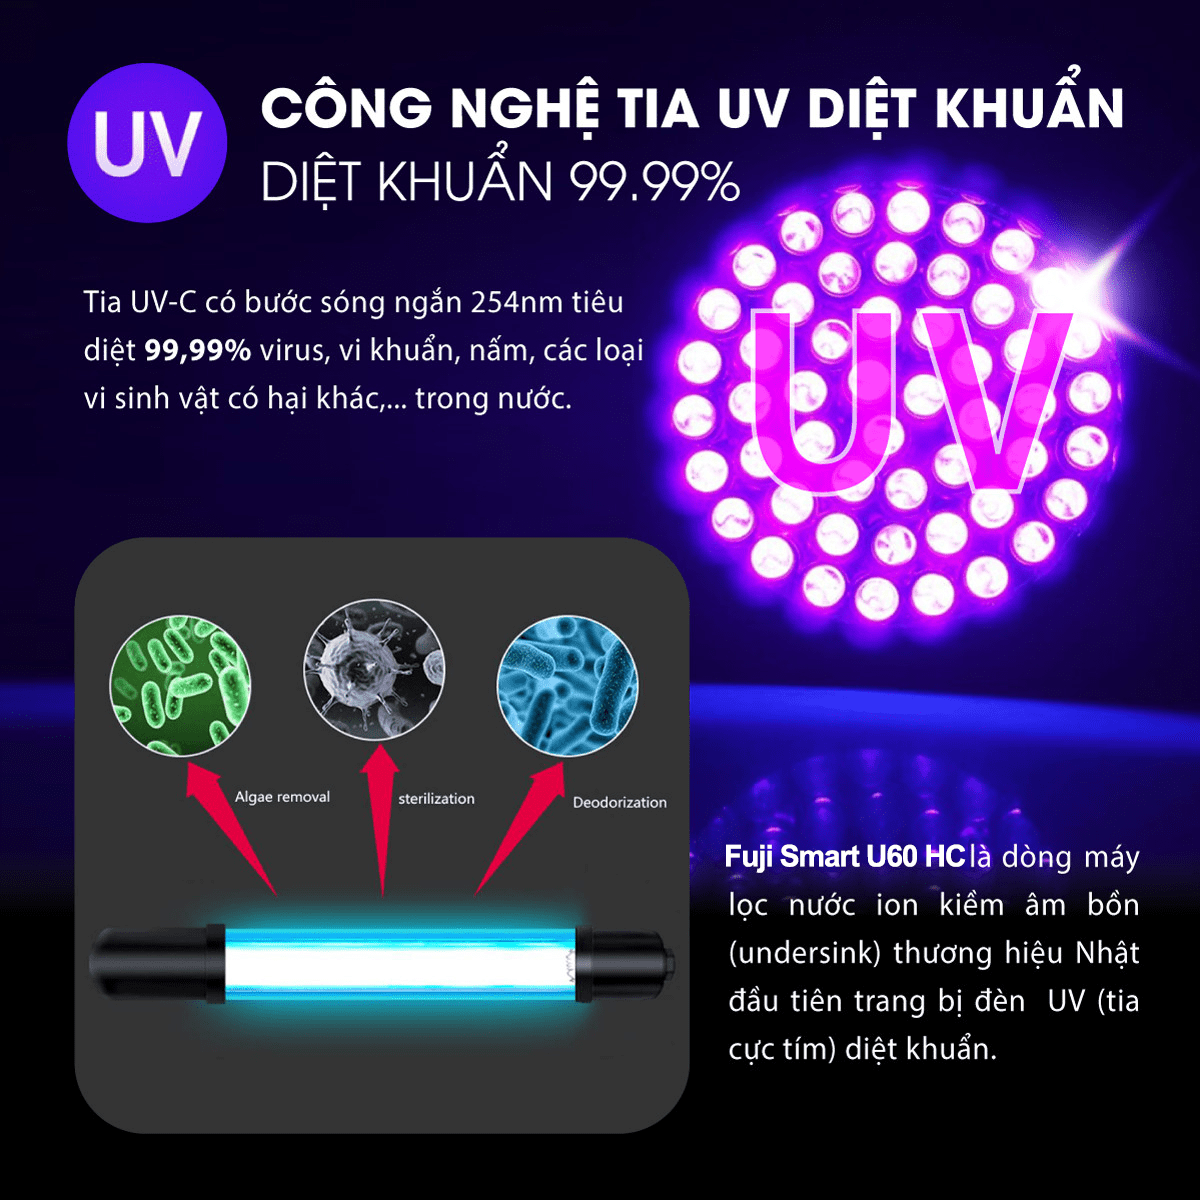 Máy lọc nước ion kiềm Fuji Smart U60 HC được trang bị công nghệ tia UV diệt khuẩn 